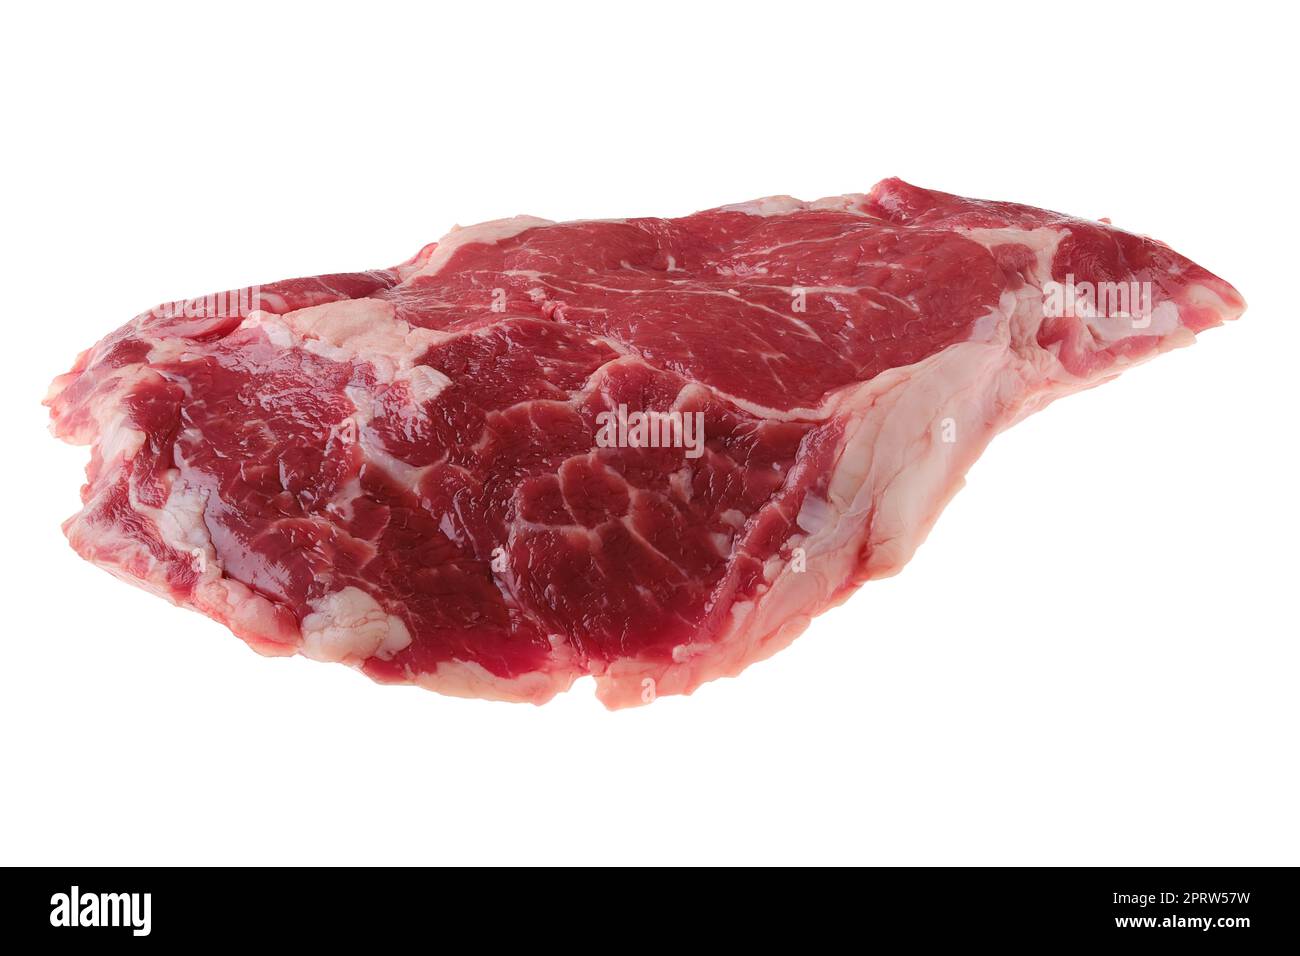 Steak de ribeye cru, viande désossée de bœuf de qualité supérieure isolée sur blanc Banque D'Images